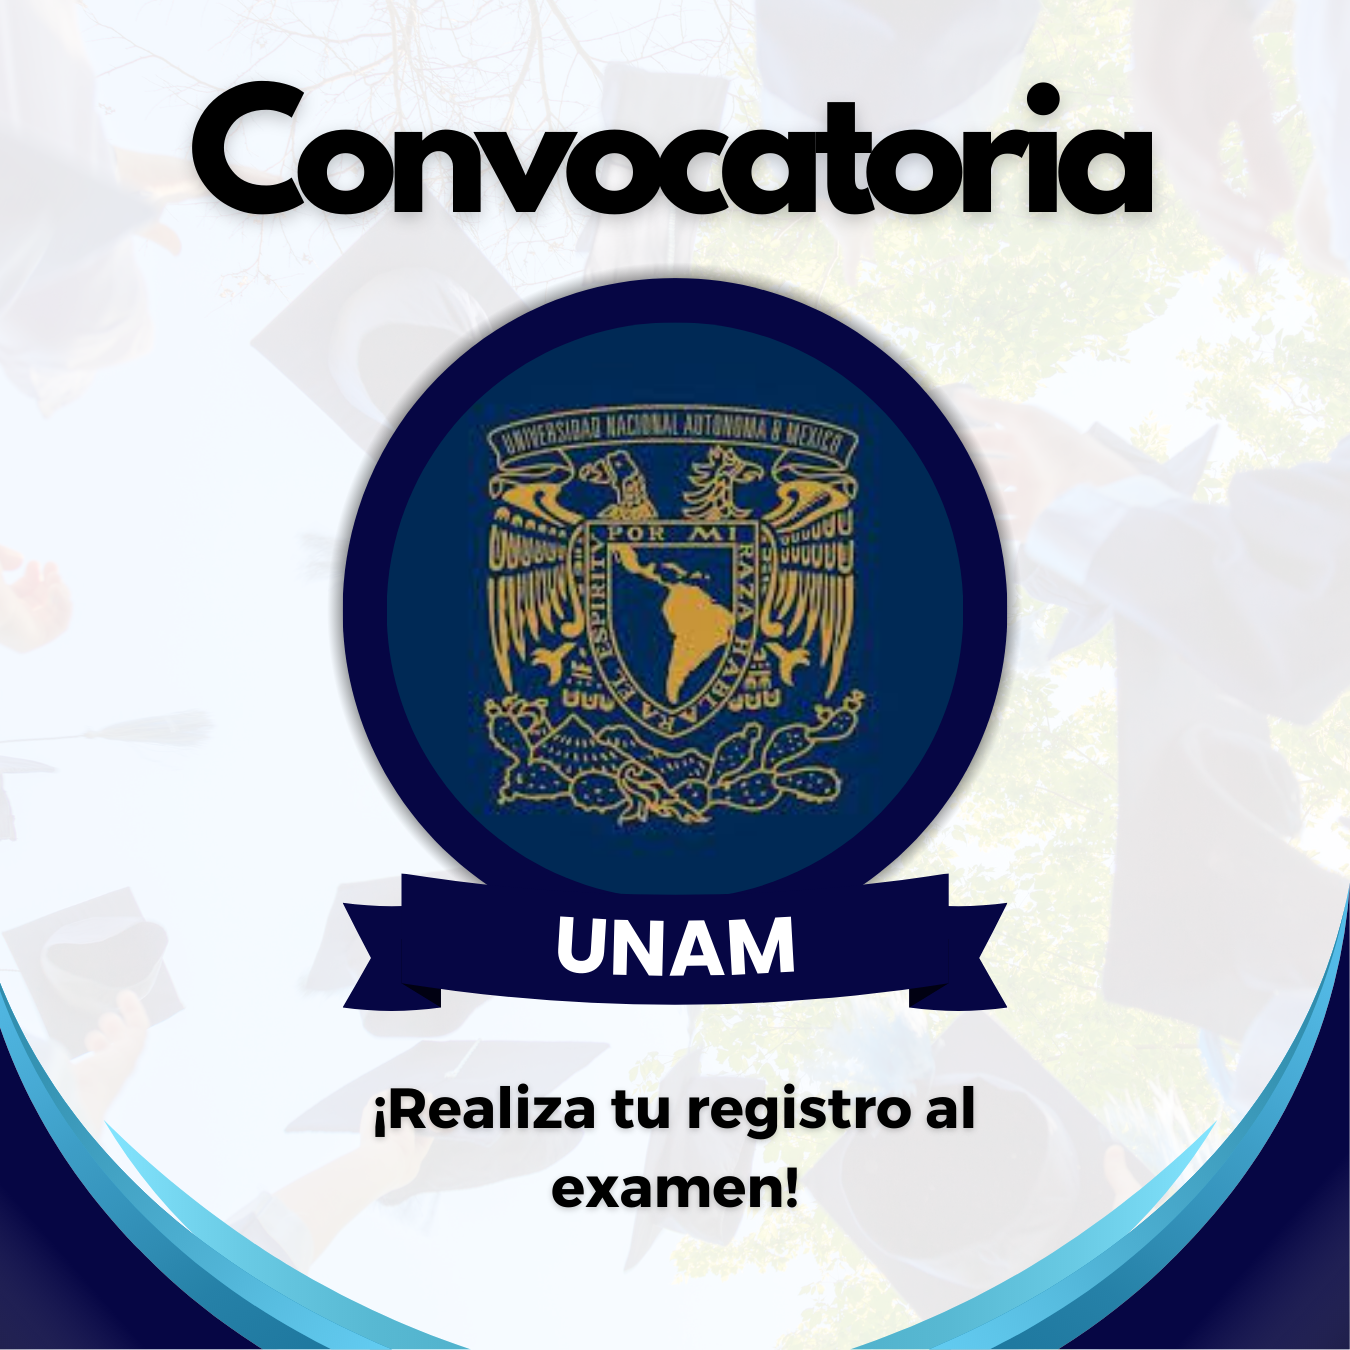 44 CONVOCATORIA DE LA UNAM